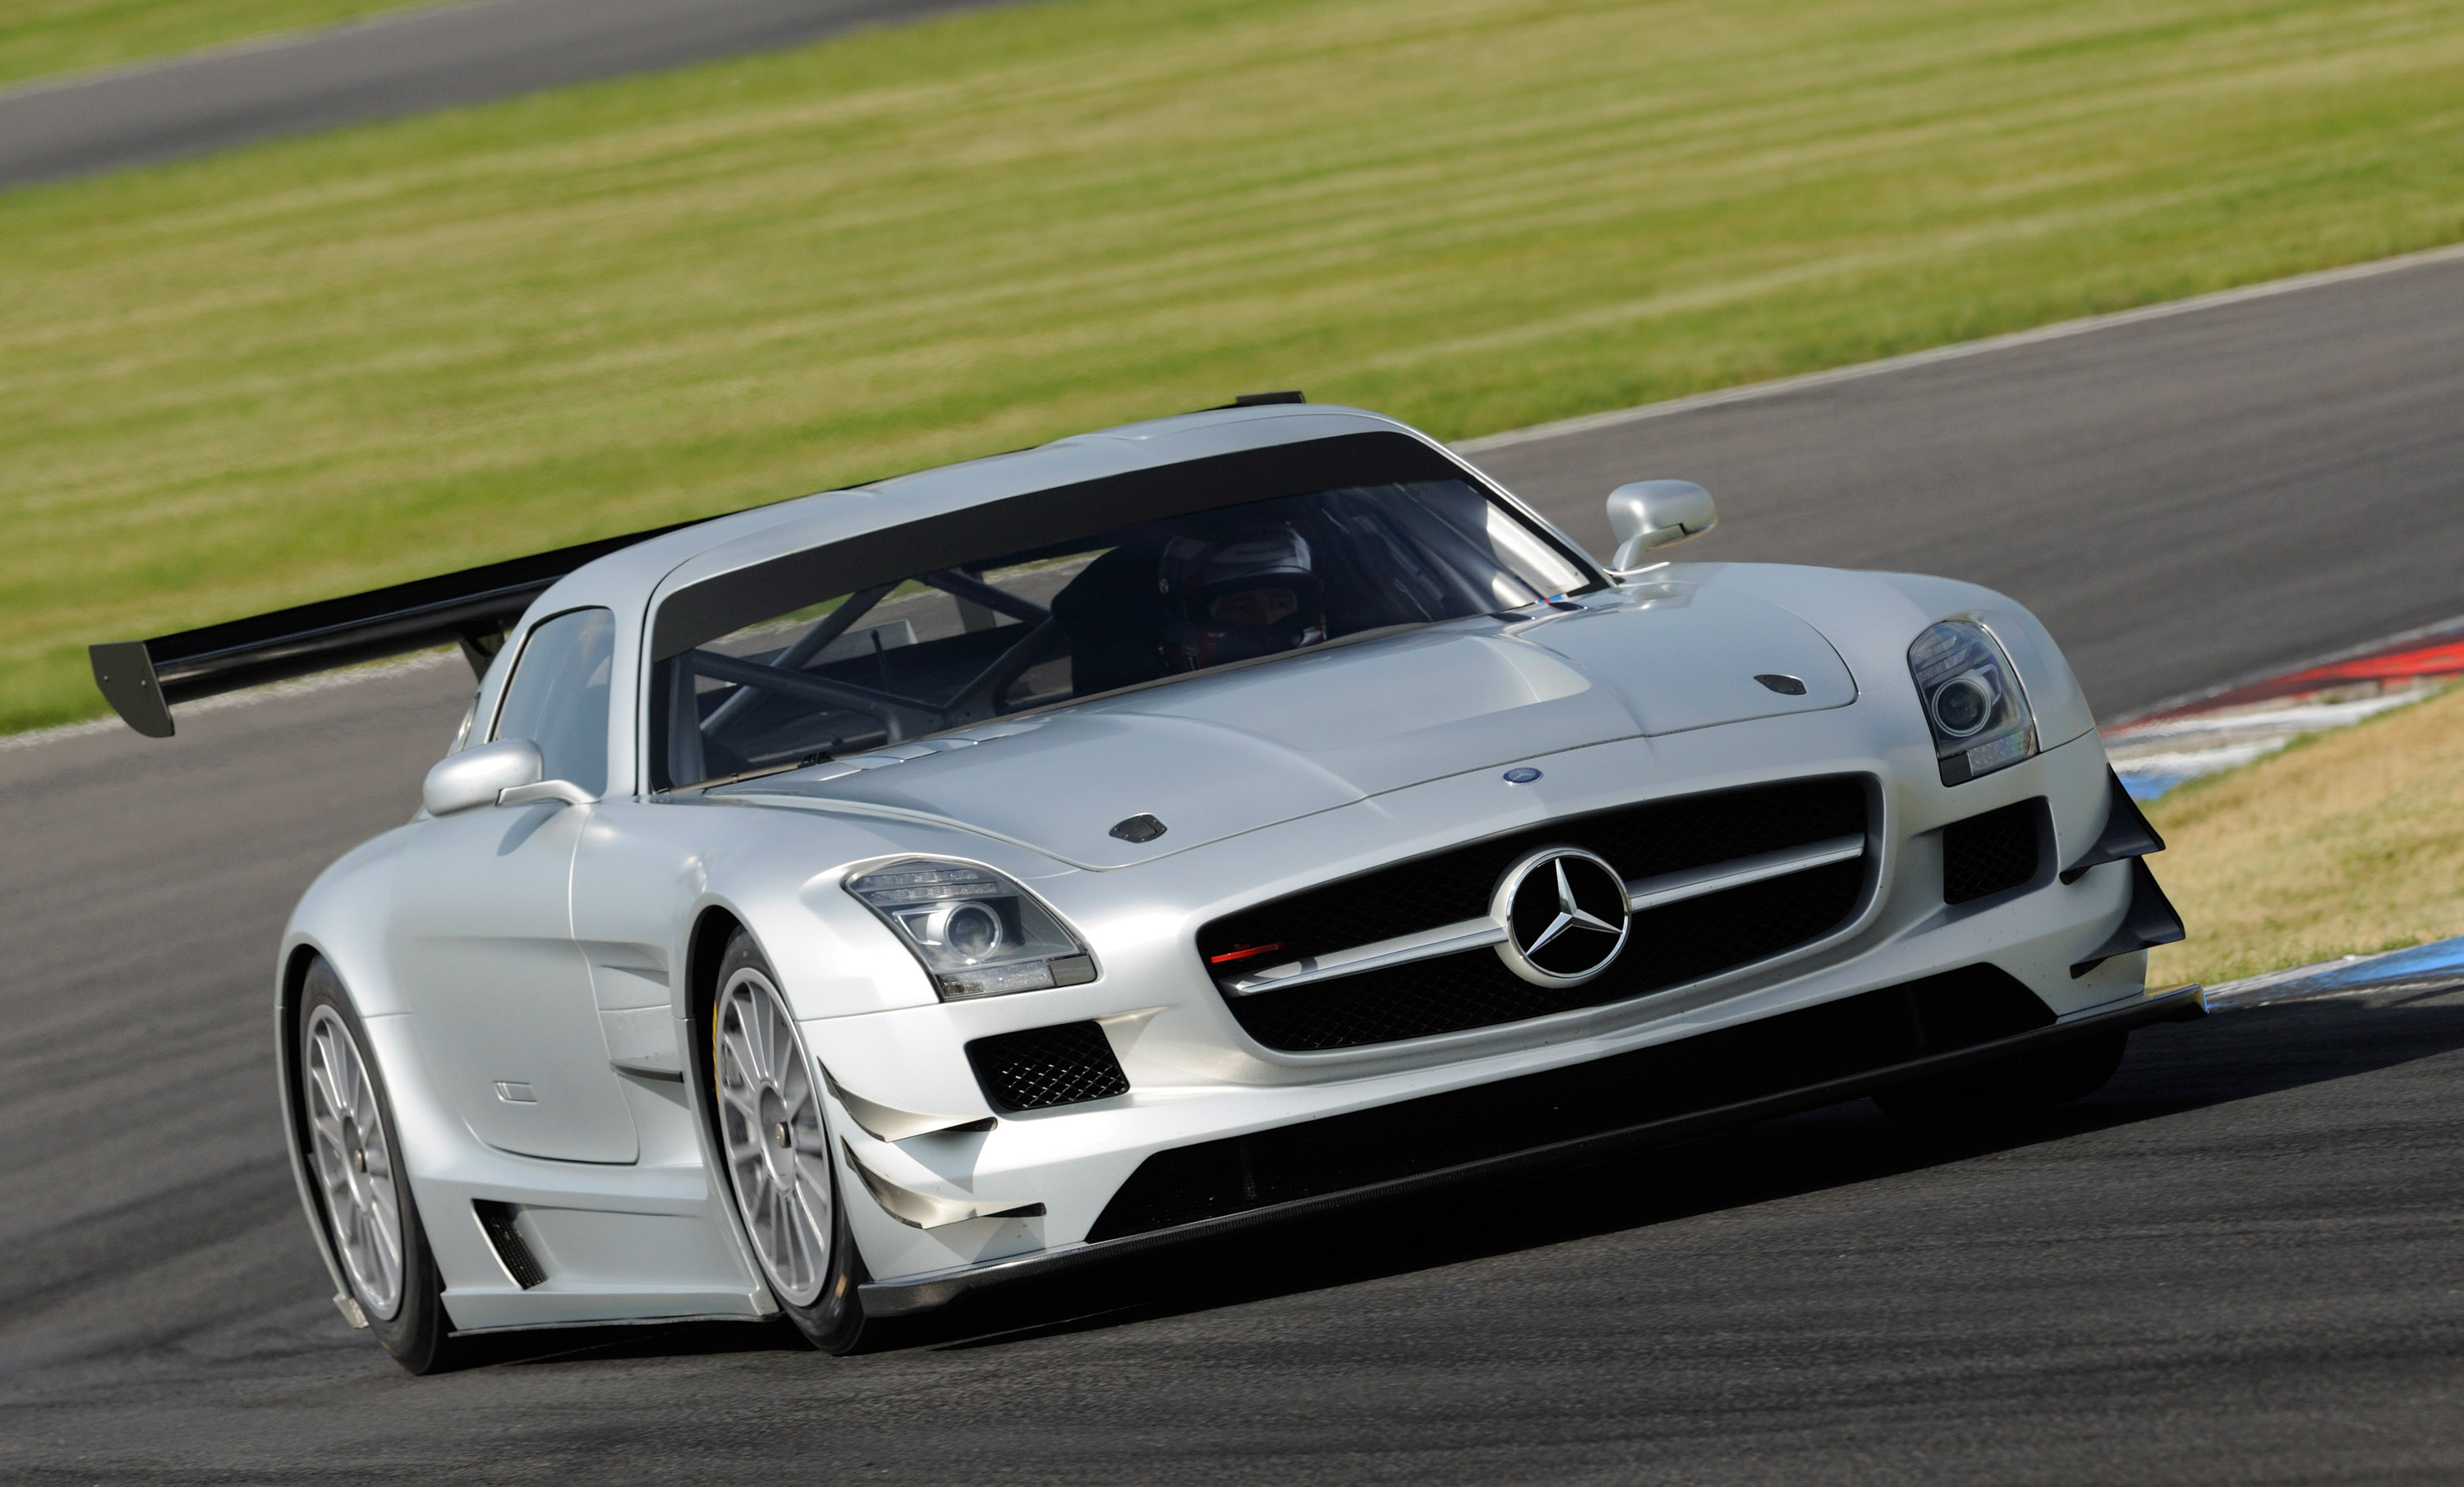 2011, Mercedes, Benz, Sls, Amg, Gt3, Race, Racing, Supercar, Supercars Wallpaper